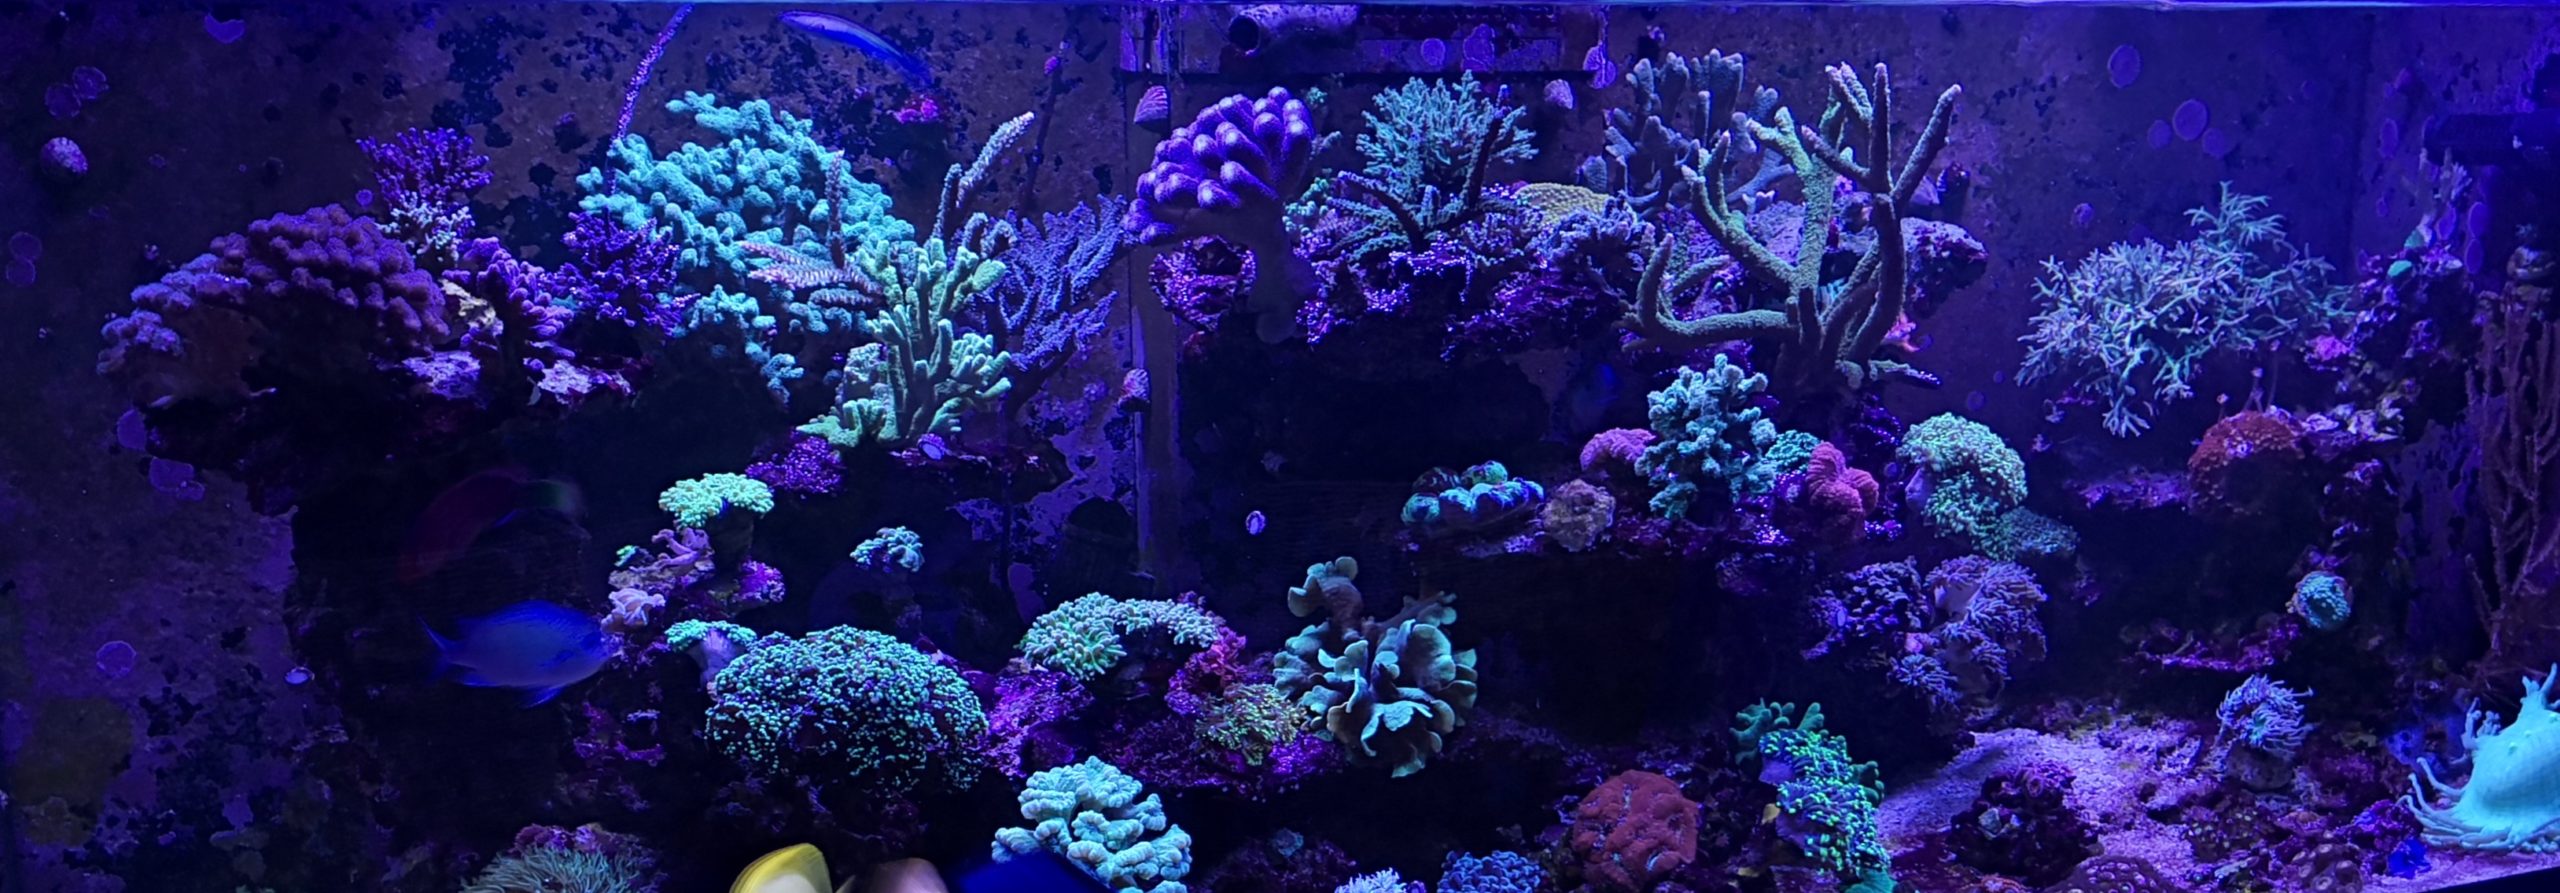 Ammerland Corals